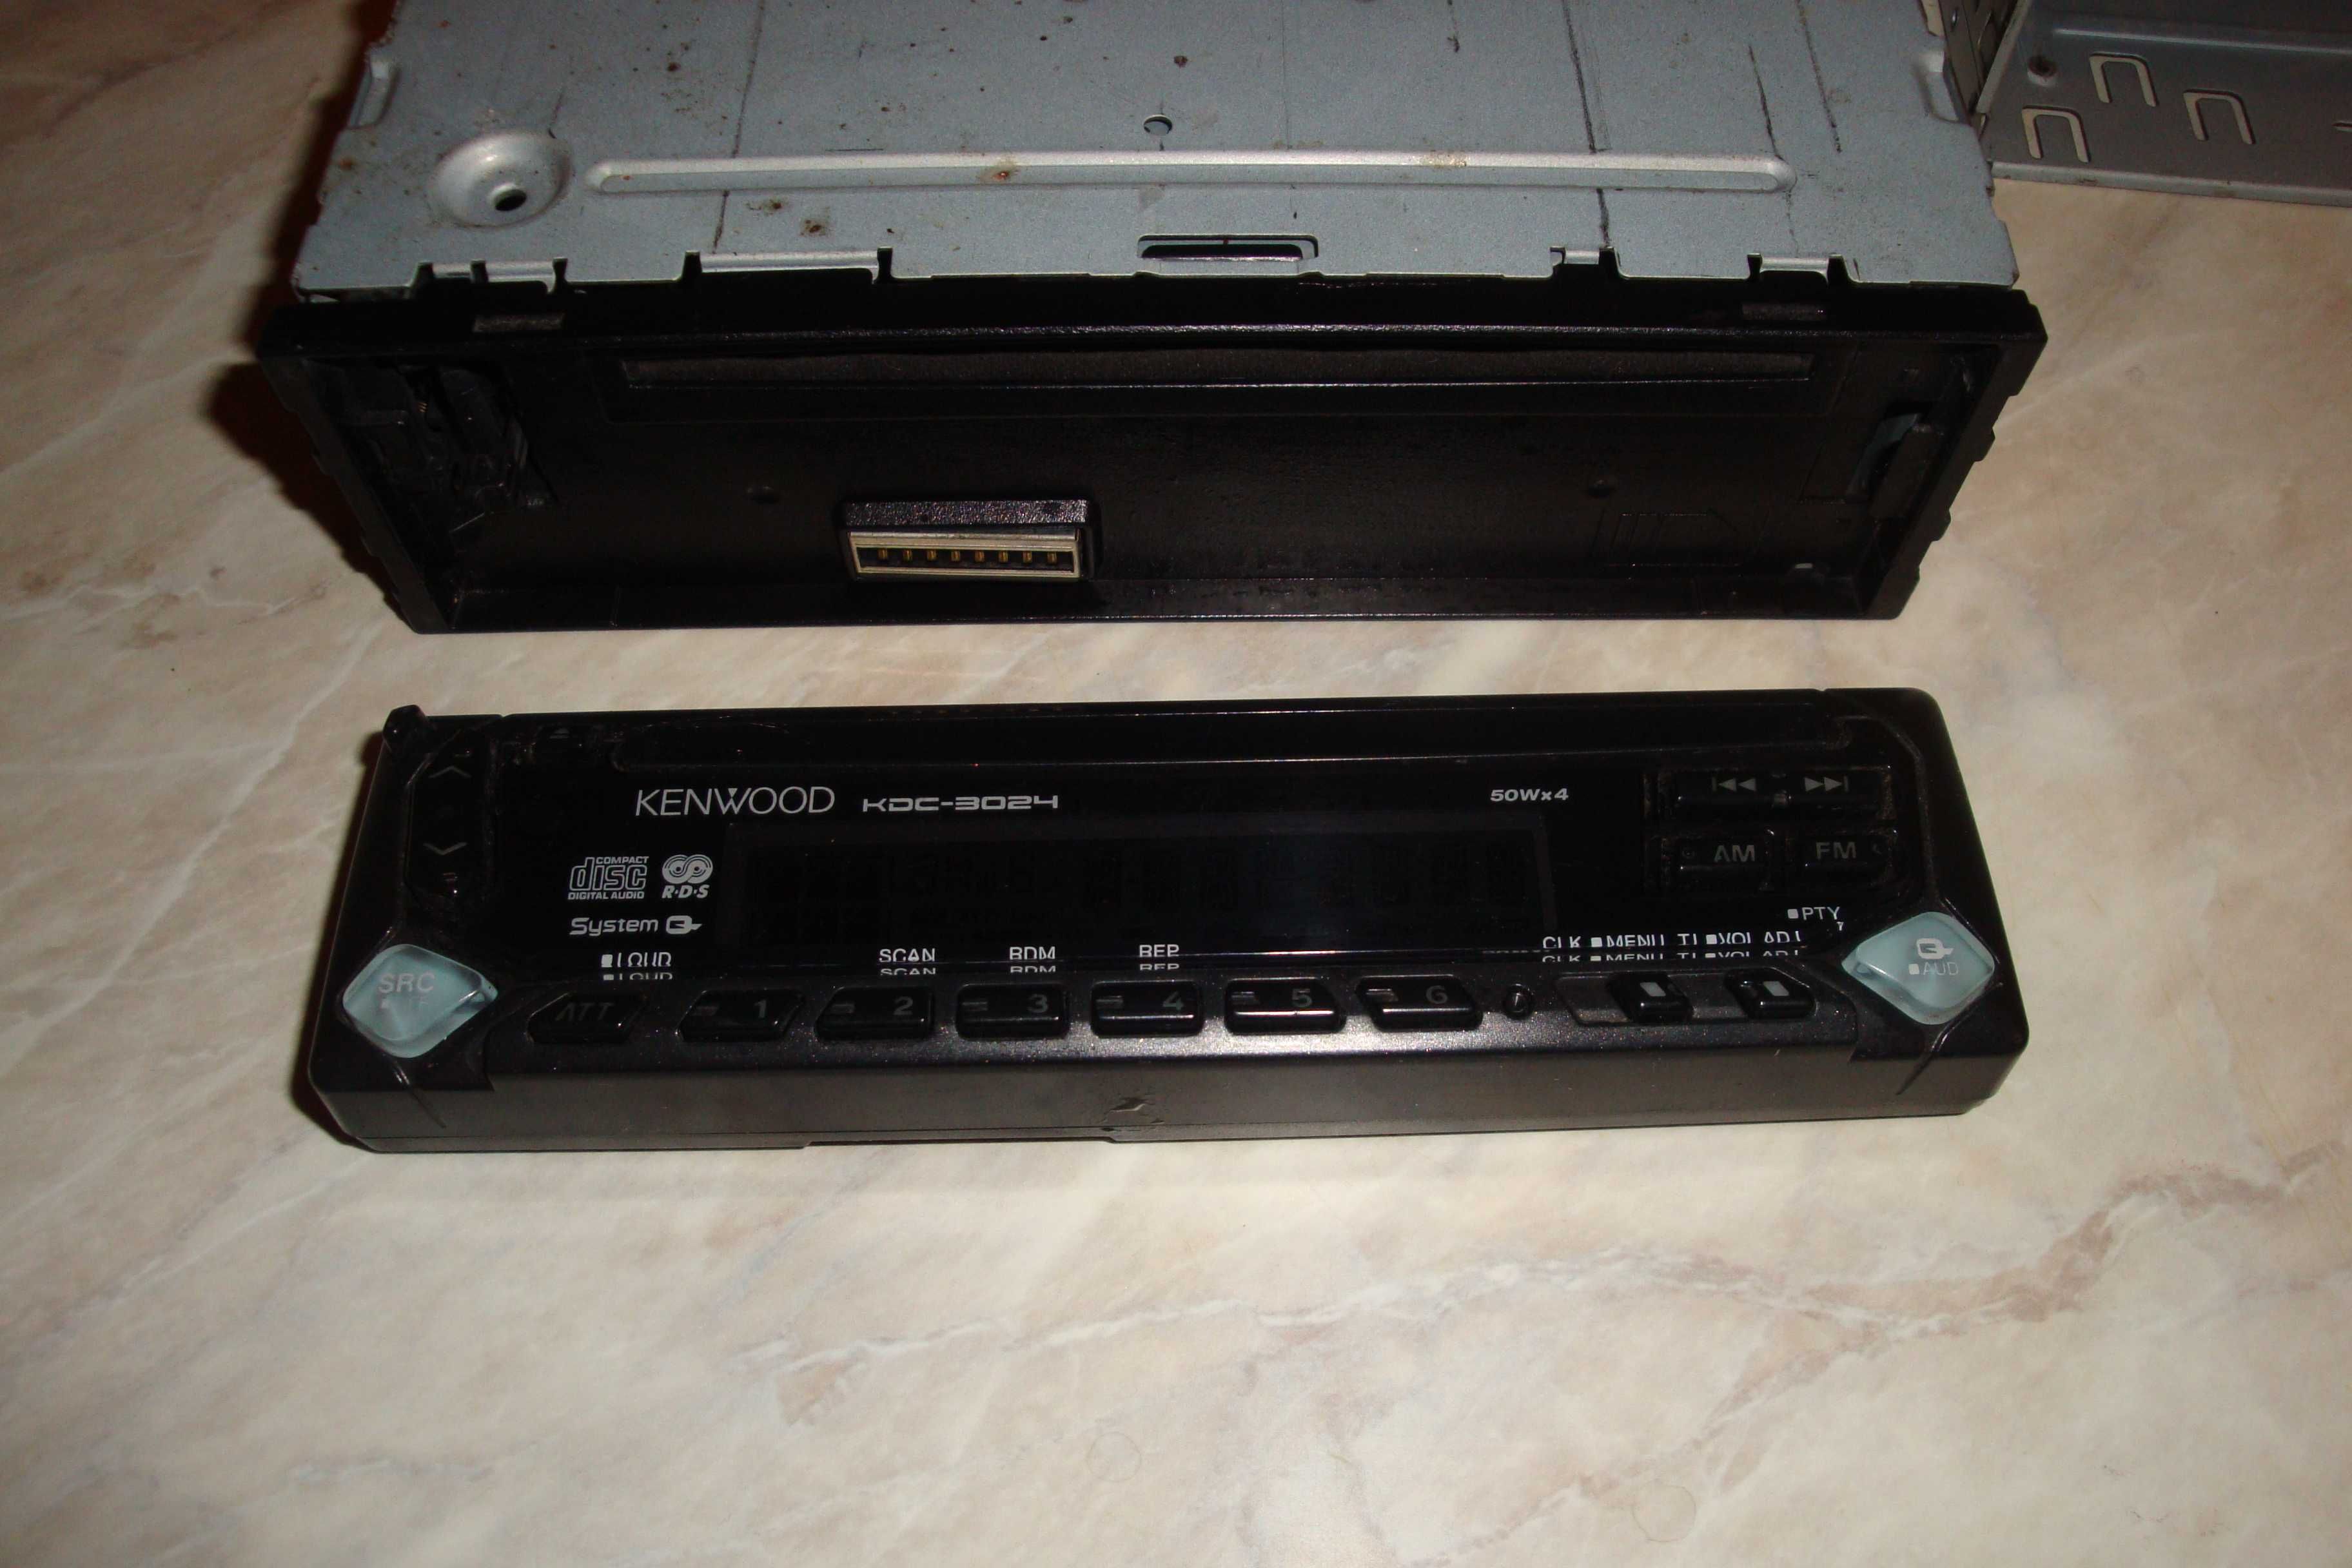 Radio cd player auto kenwood kdc-3024 50w x4